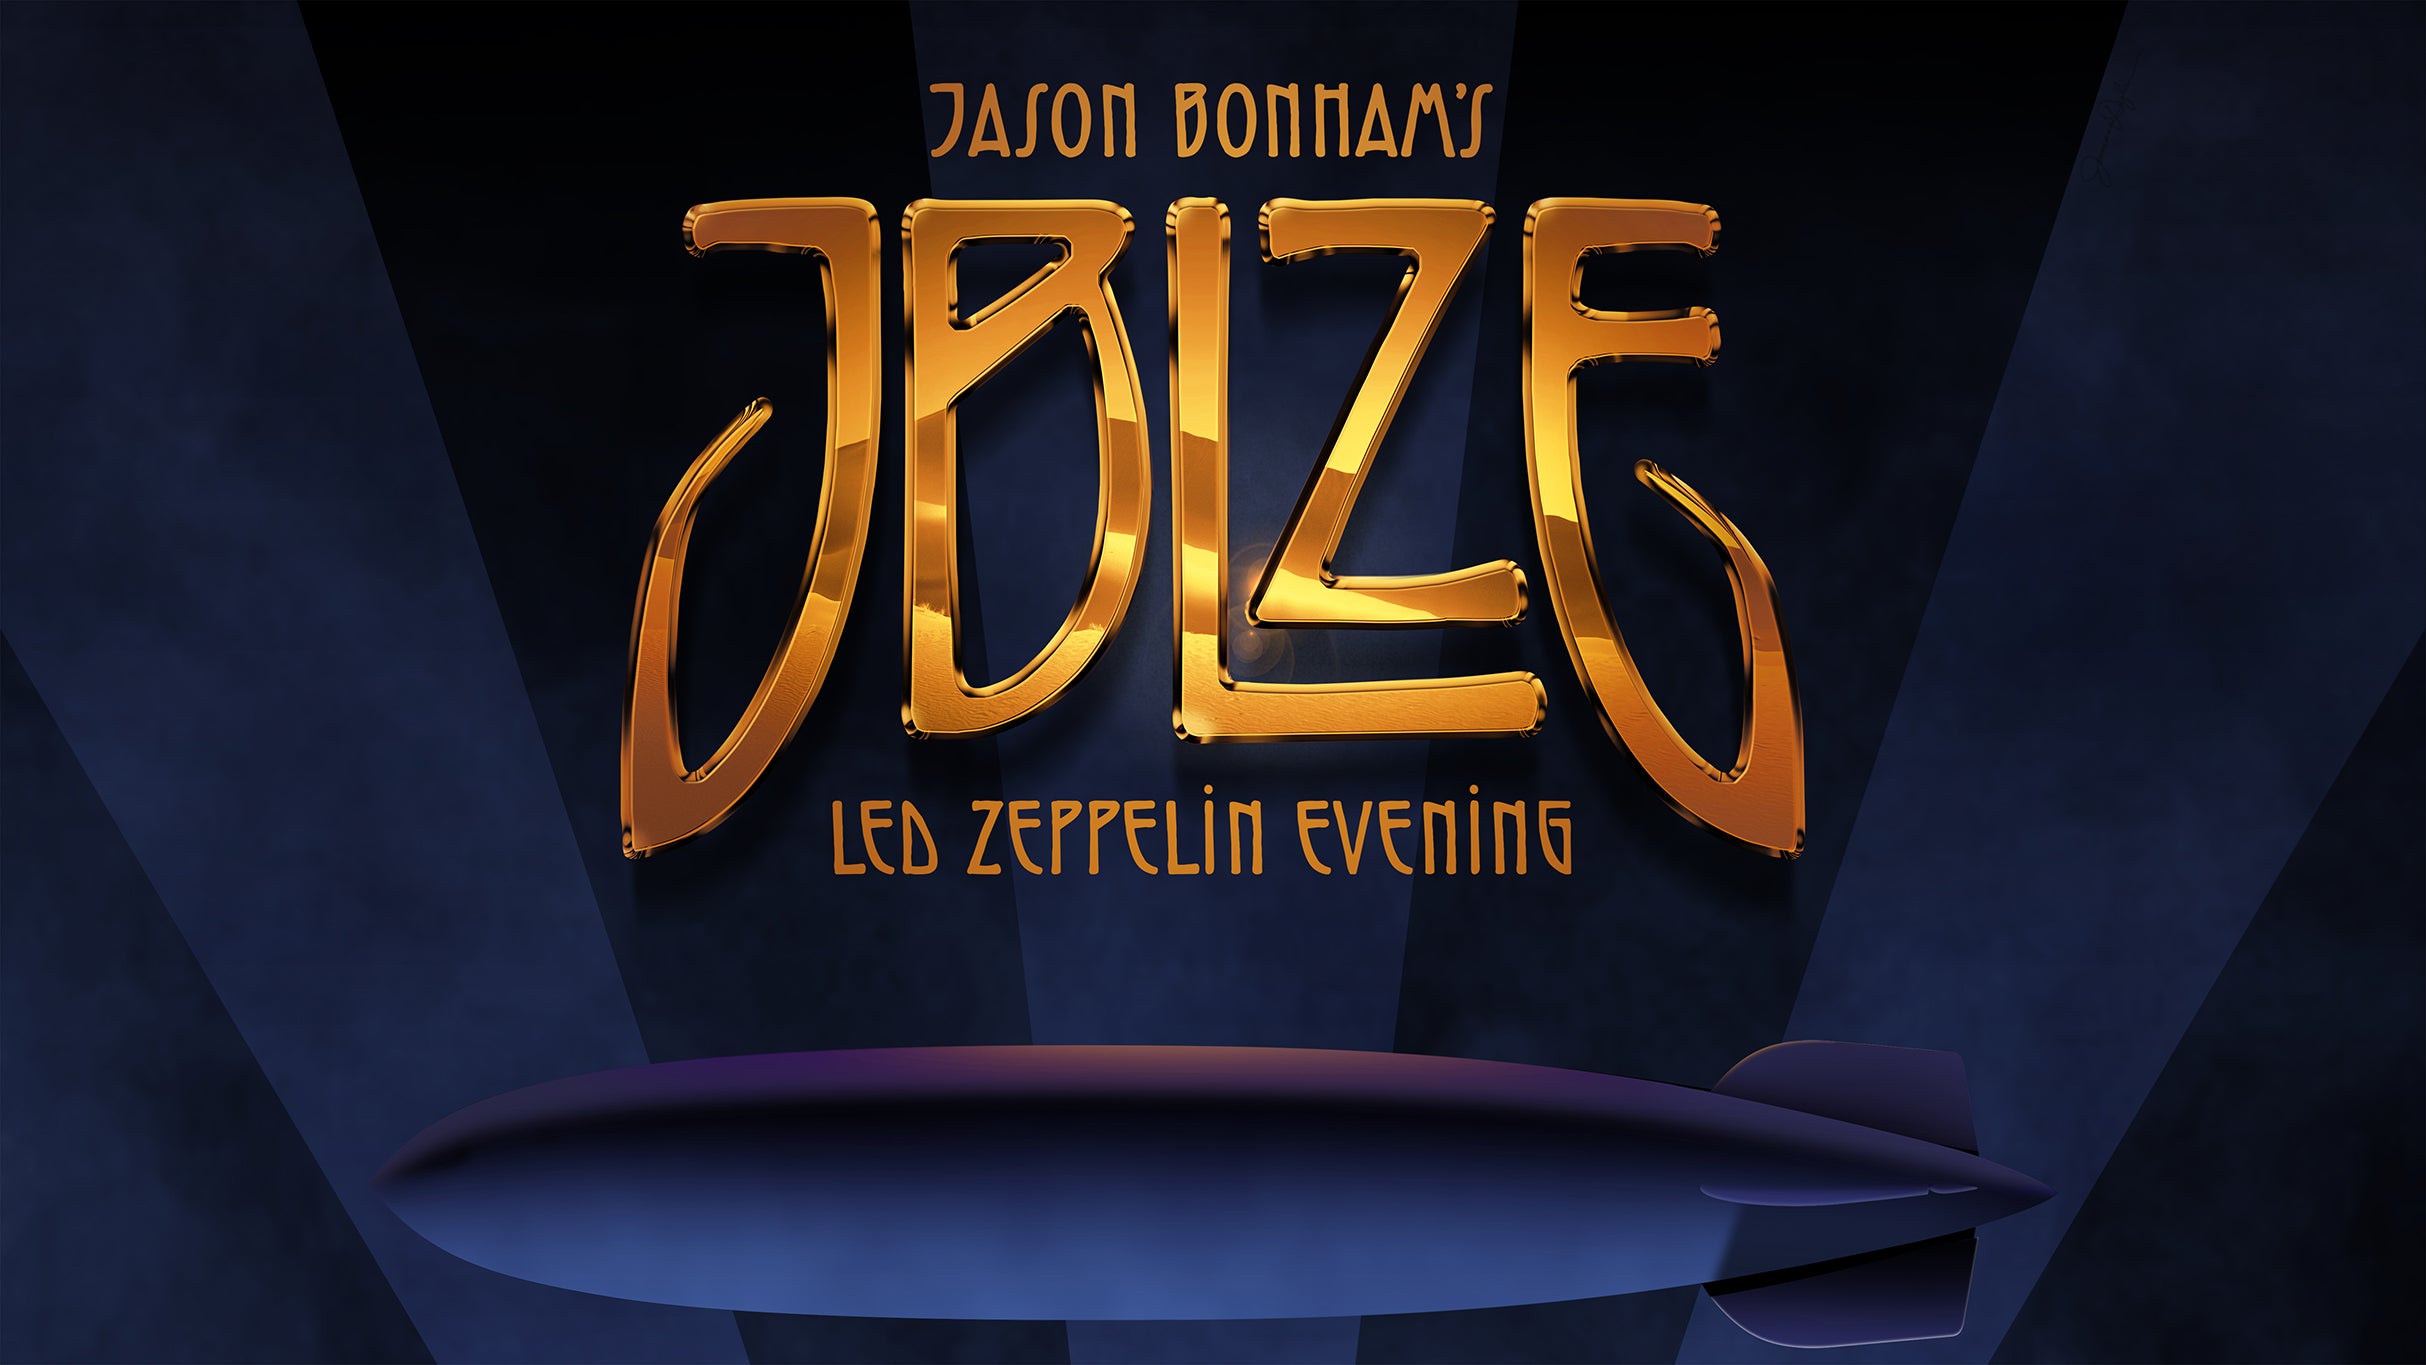 Jason Bonham's Led Zeppelin Evening presale code for genuine tickets in Calgary